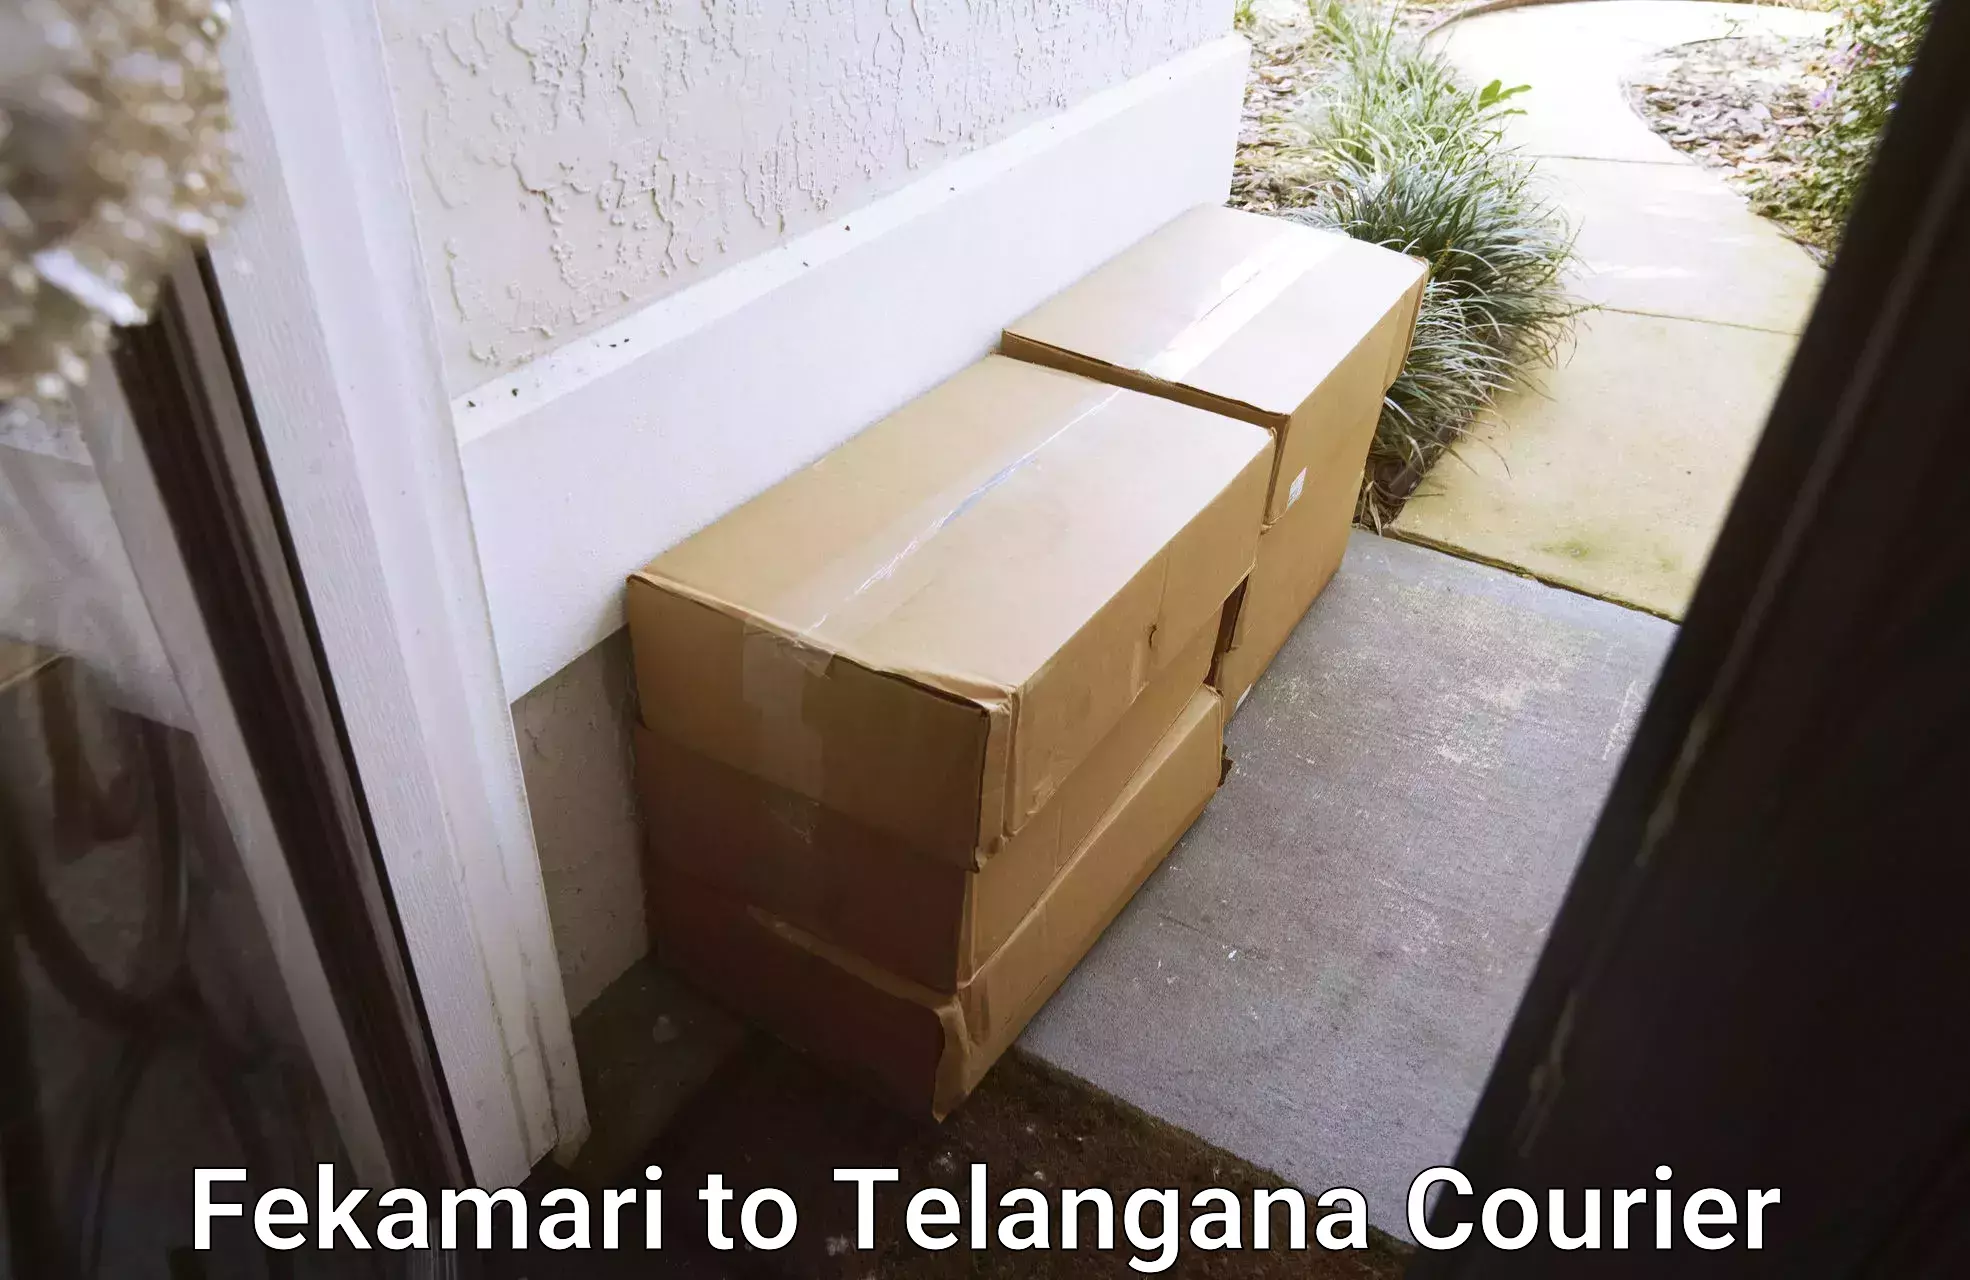 International courier rates Fekamari to Bijinapalle